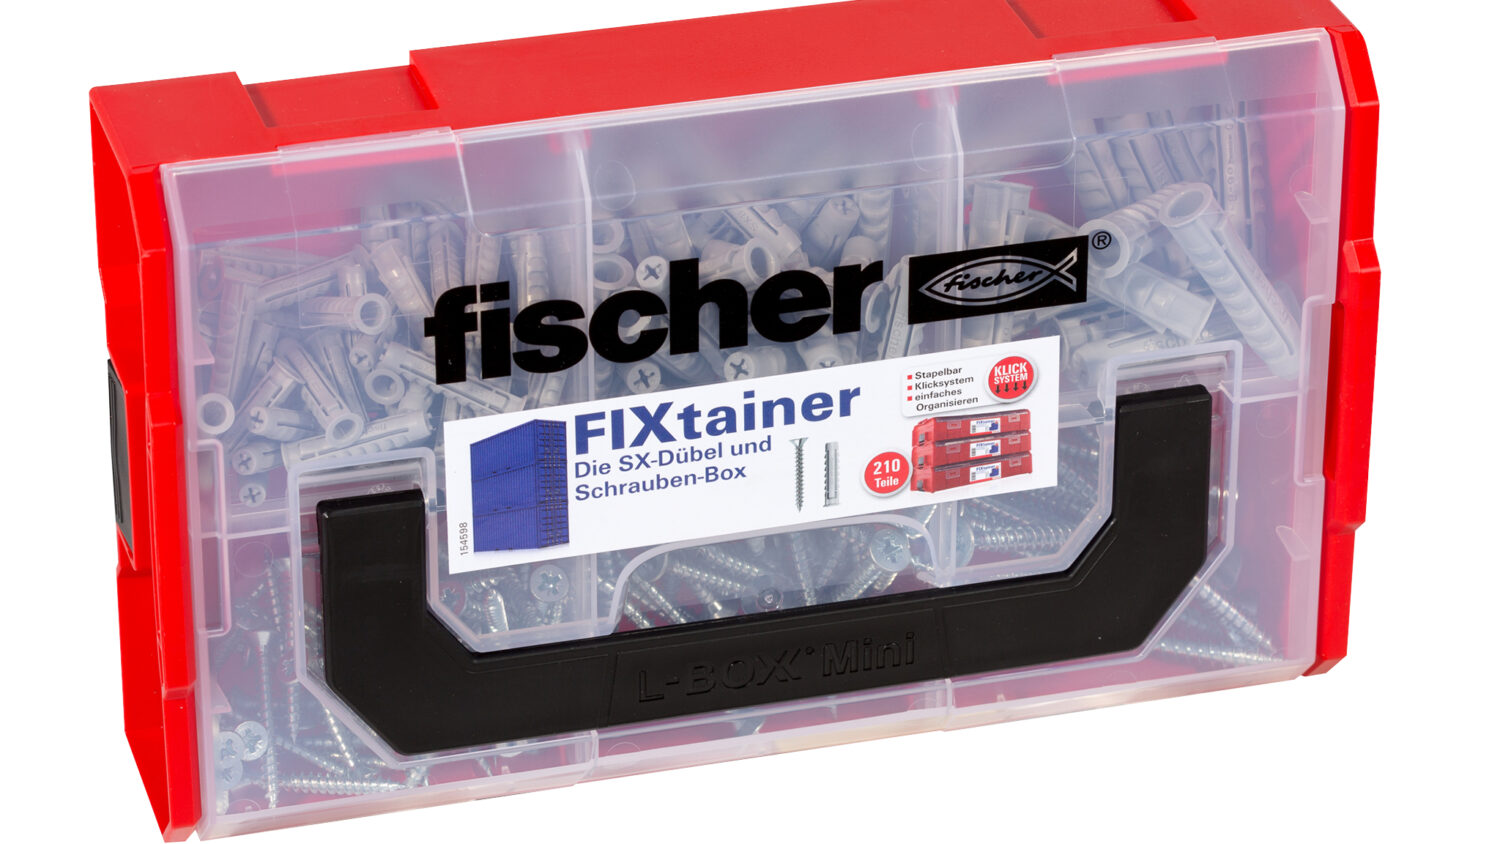 Die SX-Dübel und Schrauben-Box enthält den fischer Dübel SX und die entsprechenden Schrauben (210 Teile). Die FixTainer-Boxen sind mit...